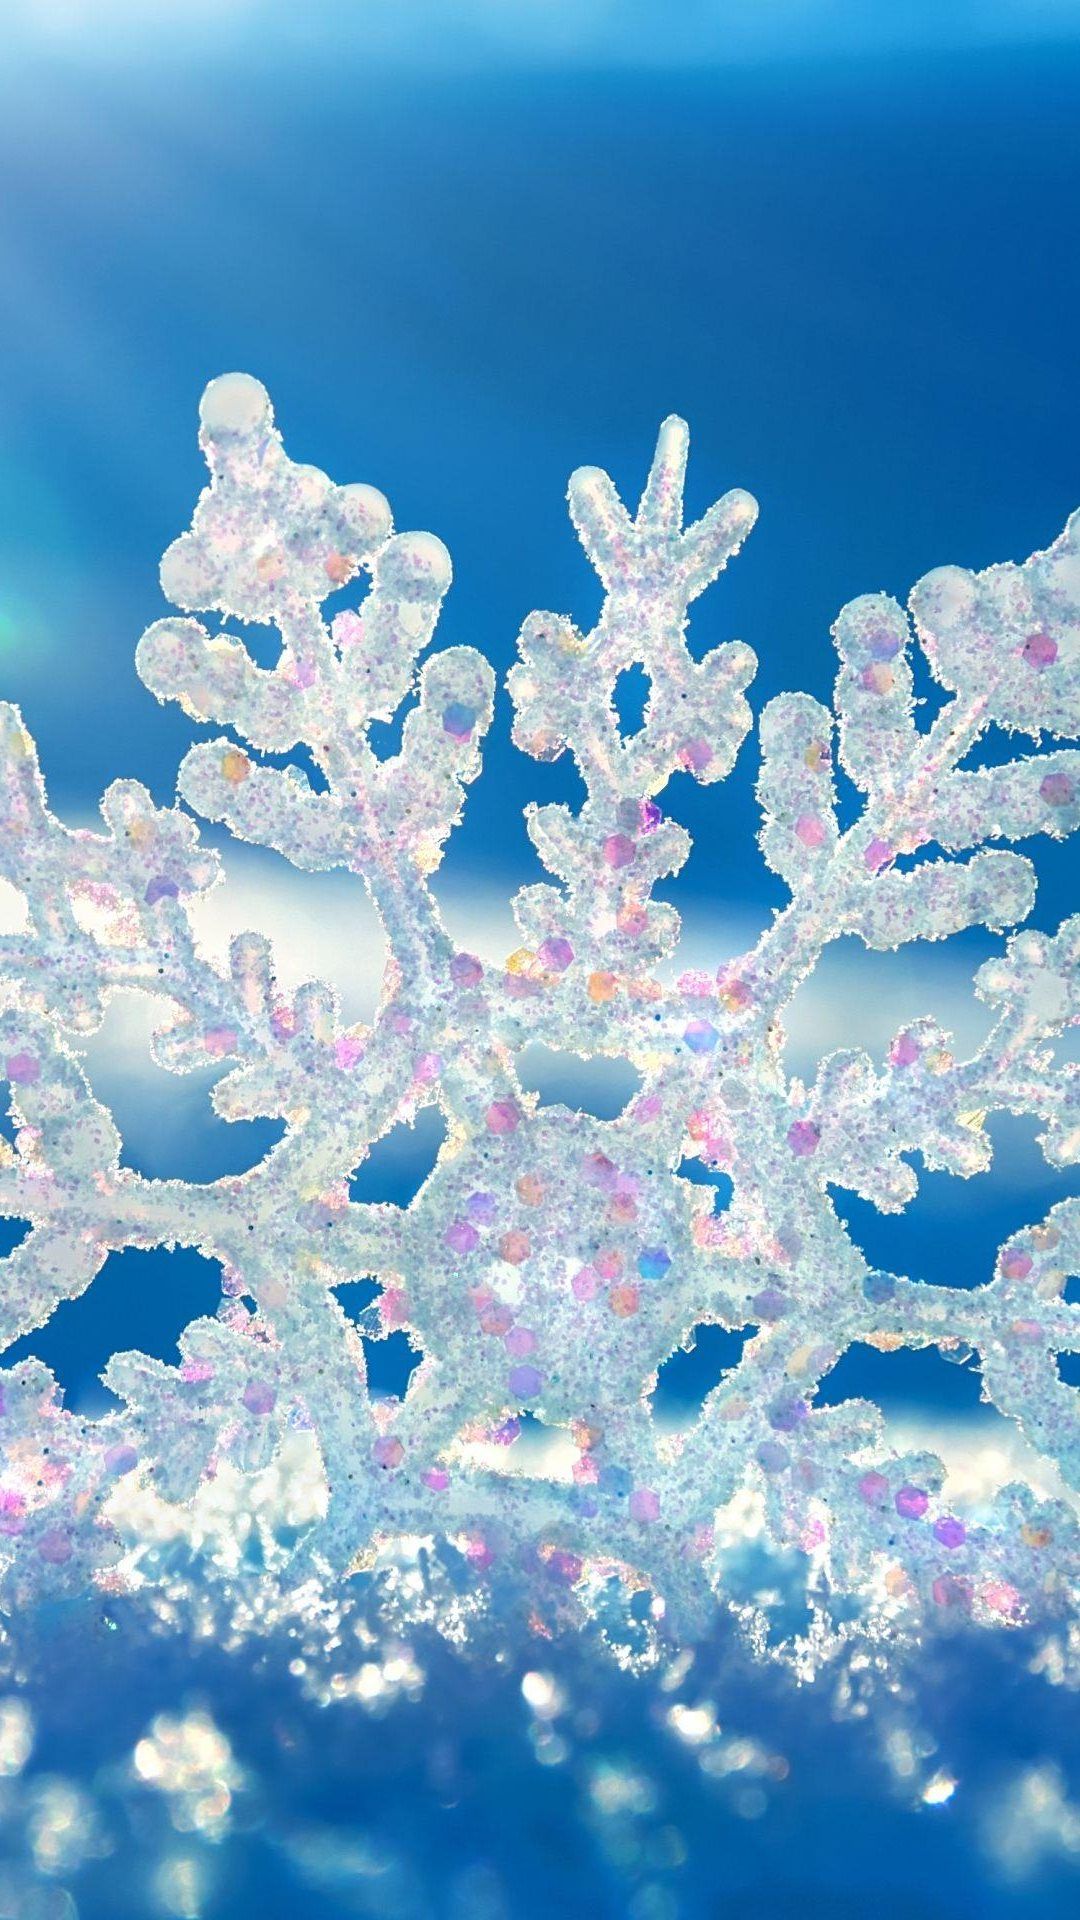 Macro Crystal Snowflake. Android Wallpaper. Winter wallpaper, Snowflake wallpaper, Winter wallpaper hd